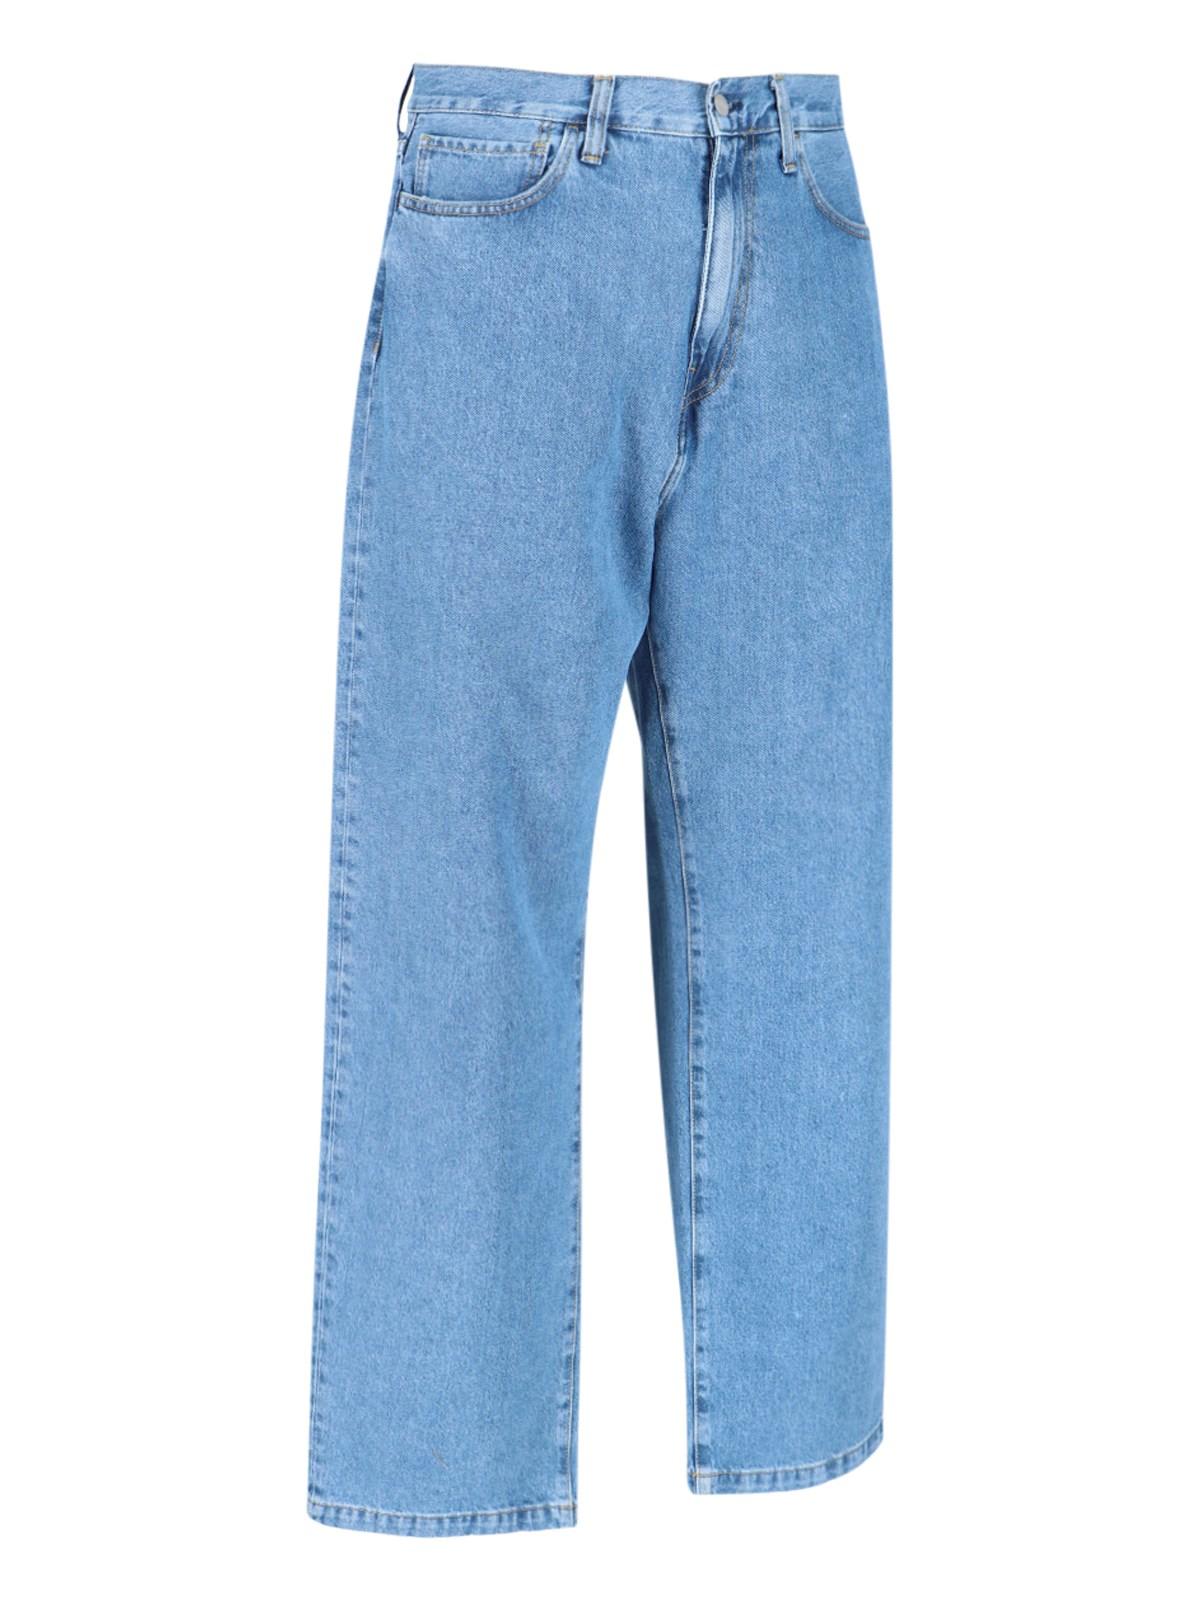 Shop Carhartt Landon Jeans In Blue Heavy Stone Wash